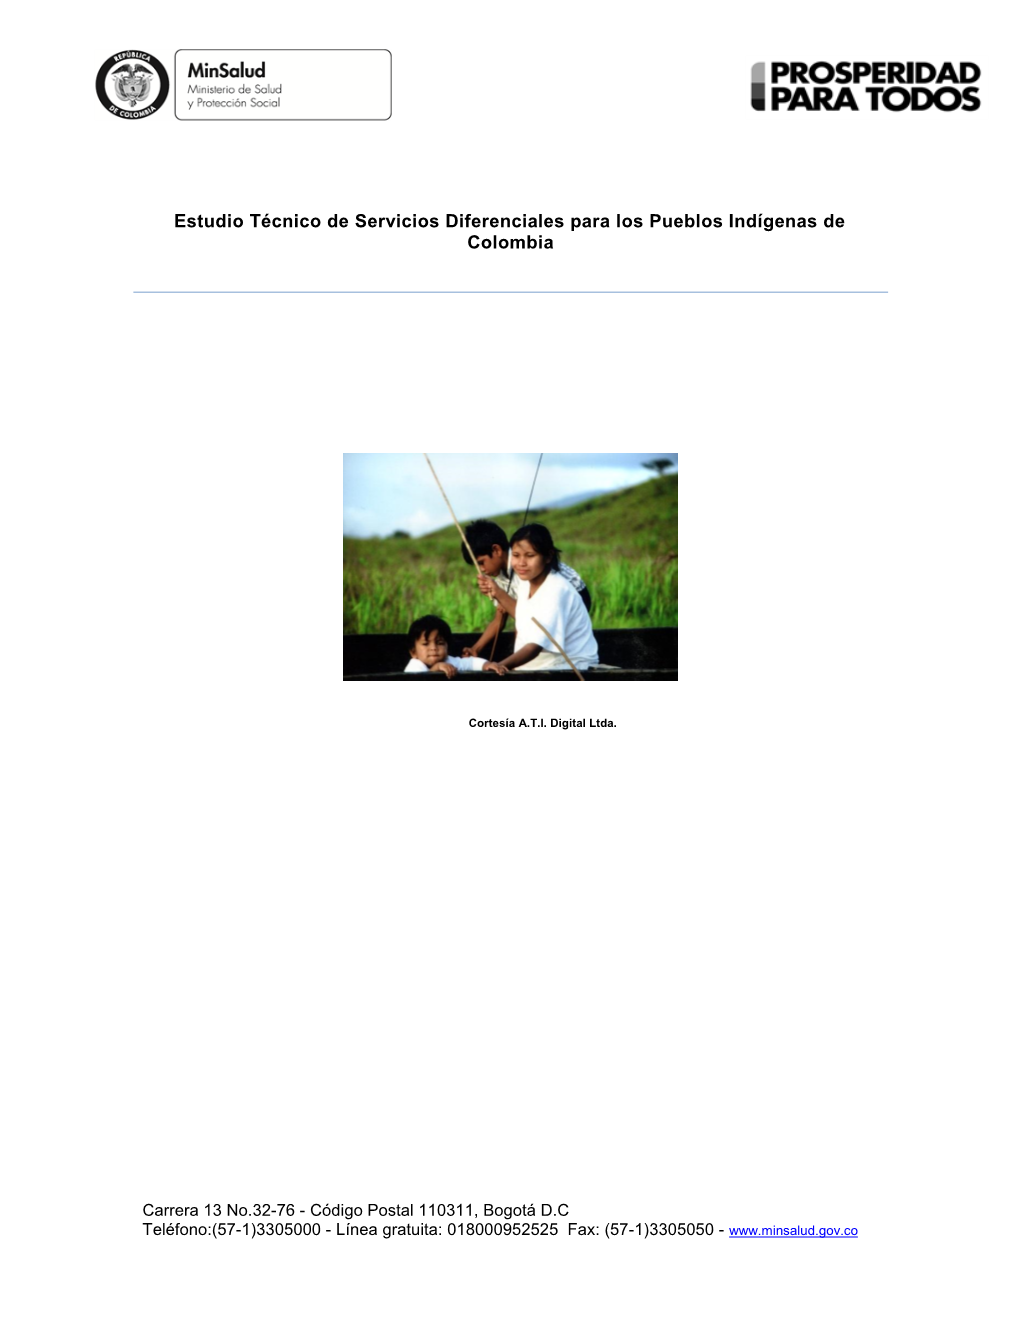 Estudio Técnico De Servicios Diferenciales Para Los Pueblos Indígenas De Colombia